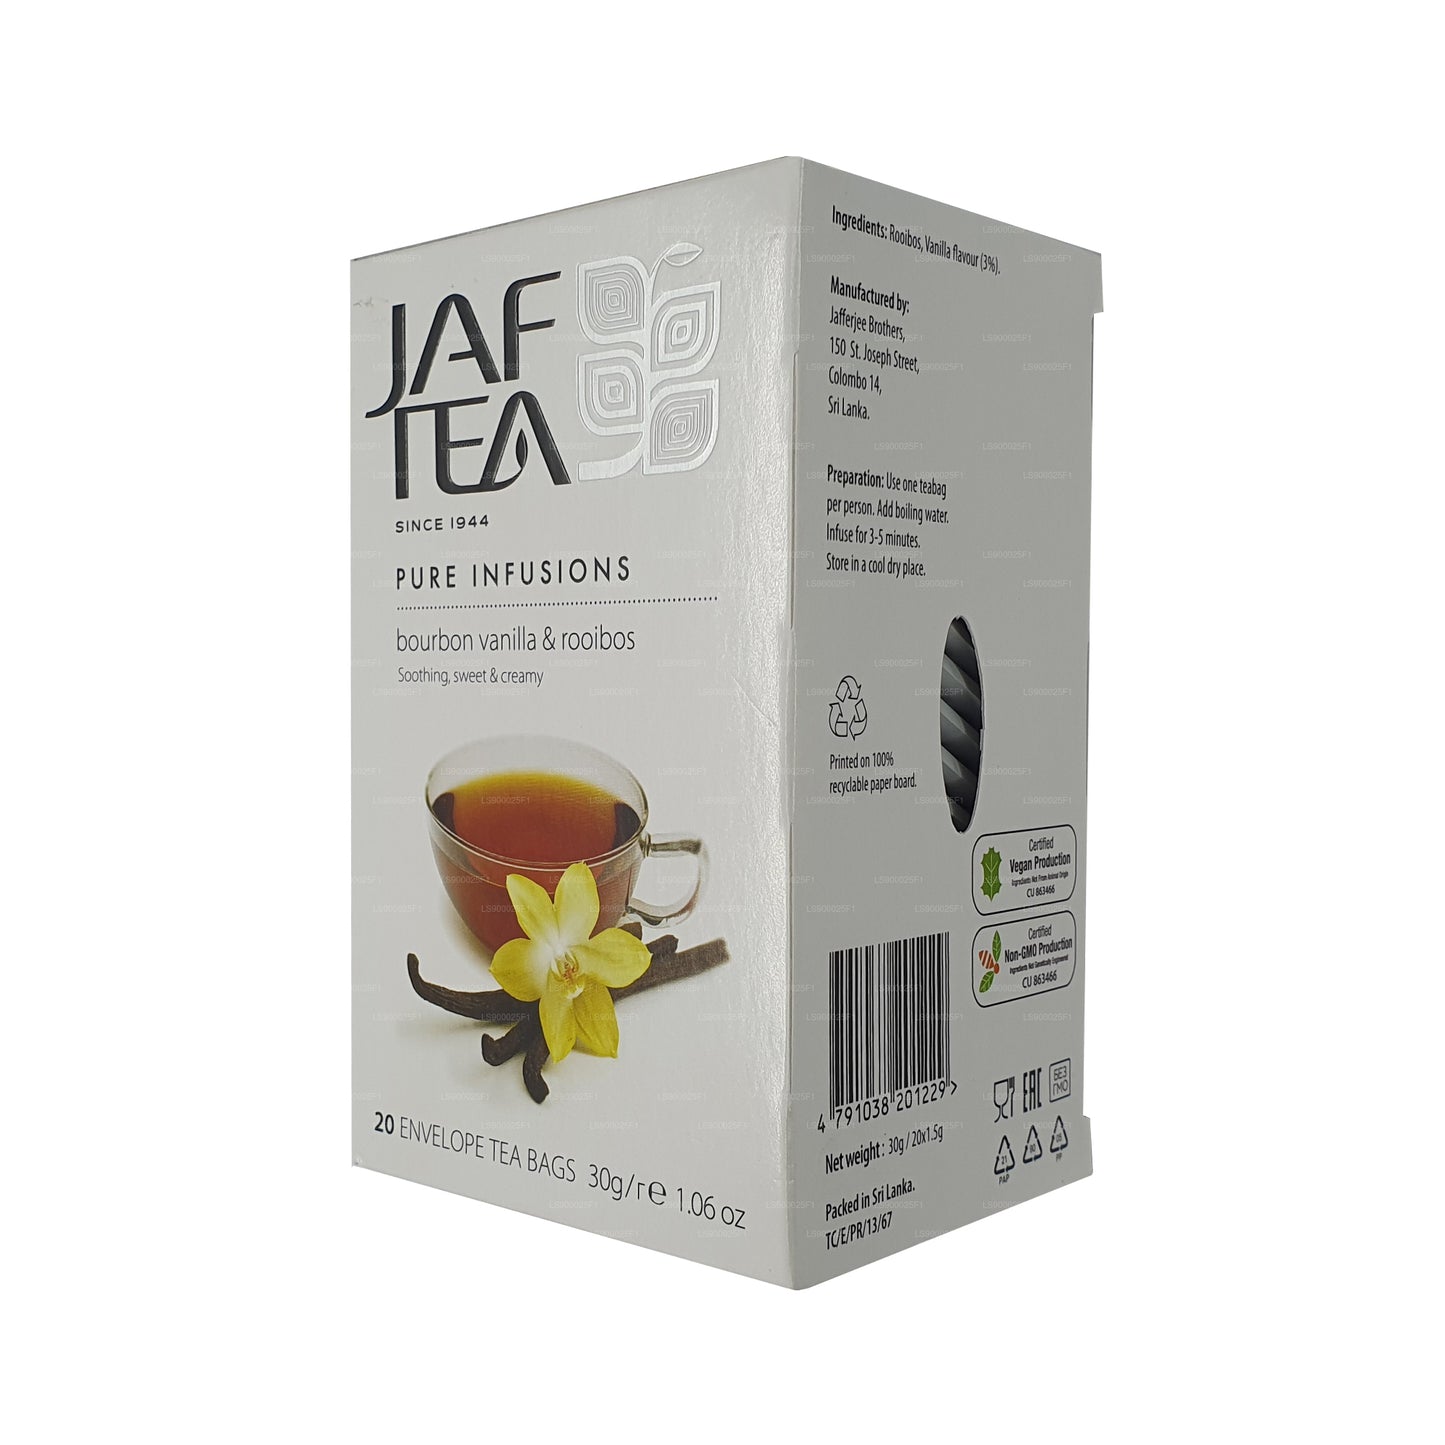 Jaf Tea Pure Infusionsコレクションバーボンバニラルイボス (30g) 20ティーバッグ